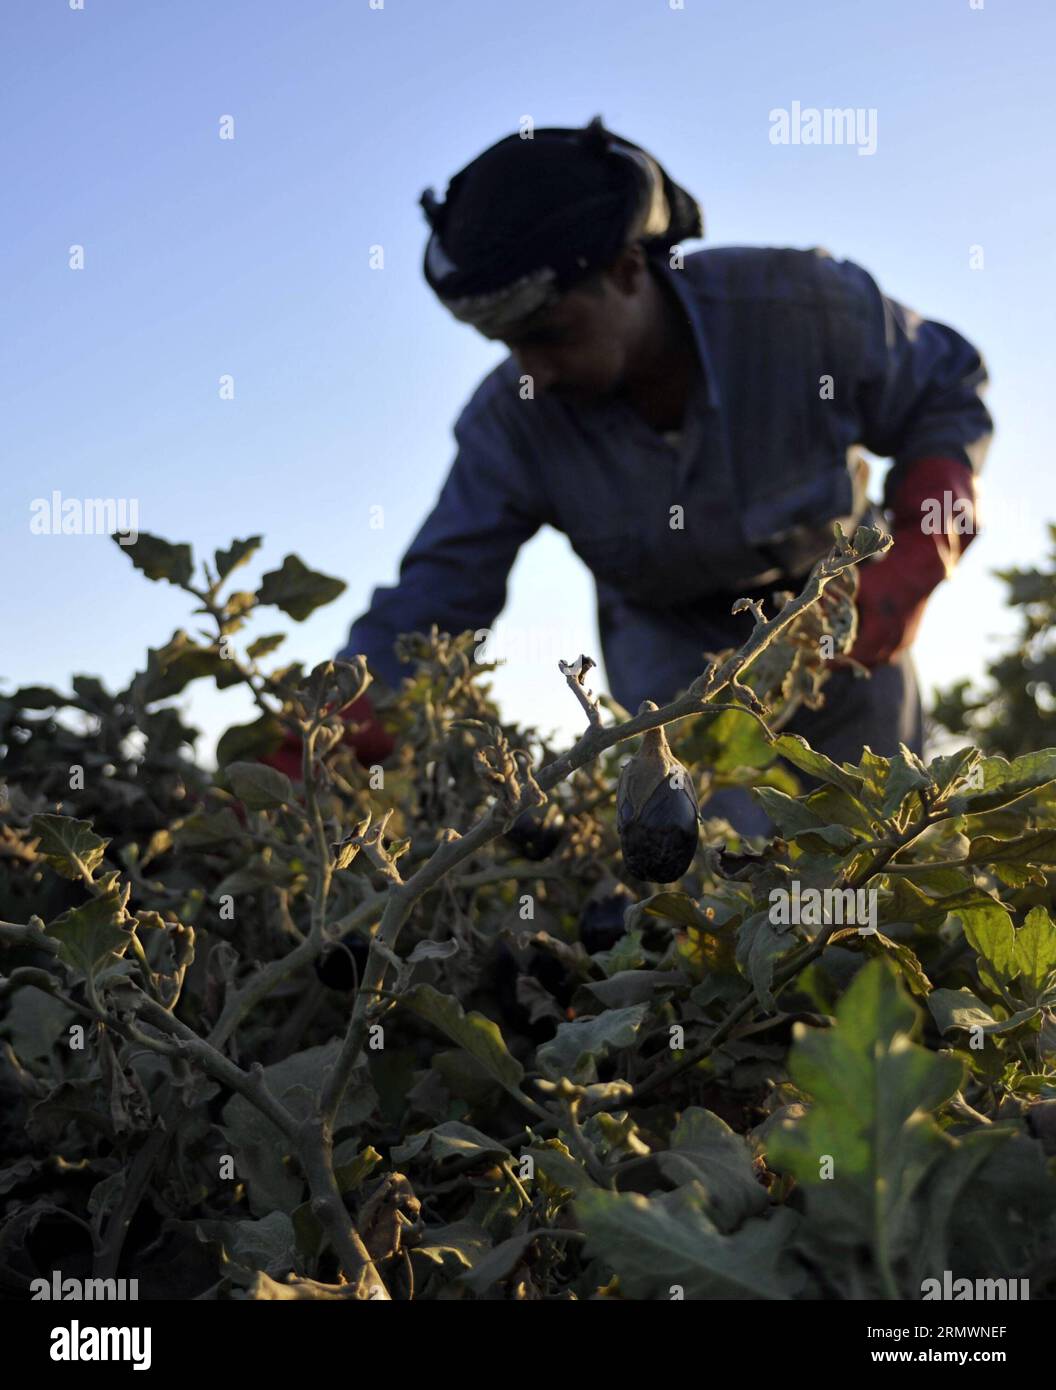 141105 -- SANAA, 5 novembre 2014 -- Un agricoltore yemenita raccoglie verdure in una fattoria nel distretto di Hamdan, a circa 20 km a nord di Sanaa, Yemen, il 5 novembre 2014. Il Ministero dell'Agricoltura yemenita mira ad espandere la coltivazione di colture alimentari e limitare le aziende agricole qat che sono diventate una minaccia per la sicurezza dell'approvvigionamento alimentare nel paese. YEMEN-SANAA-SICUREZZA DELL'APPROVVIGIONAMENTO ALIMENTARE HanixAli PUBLICATIONxNOTxINxCHN Foto Stock